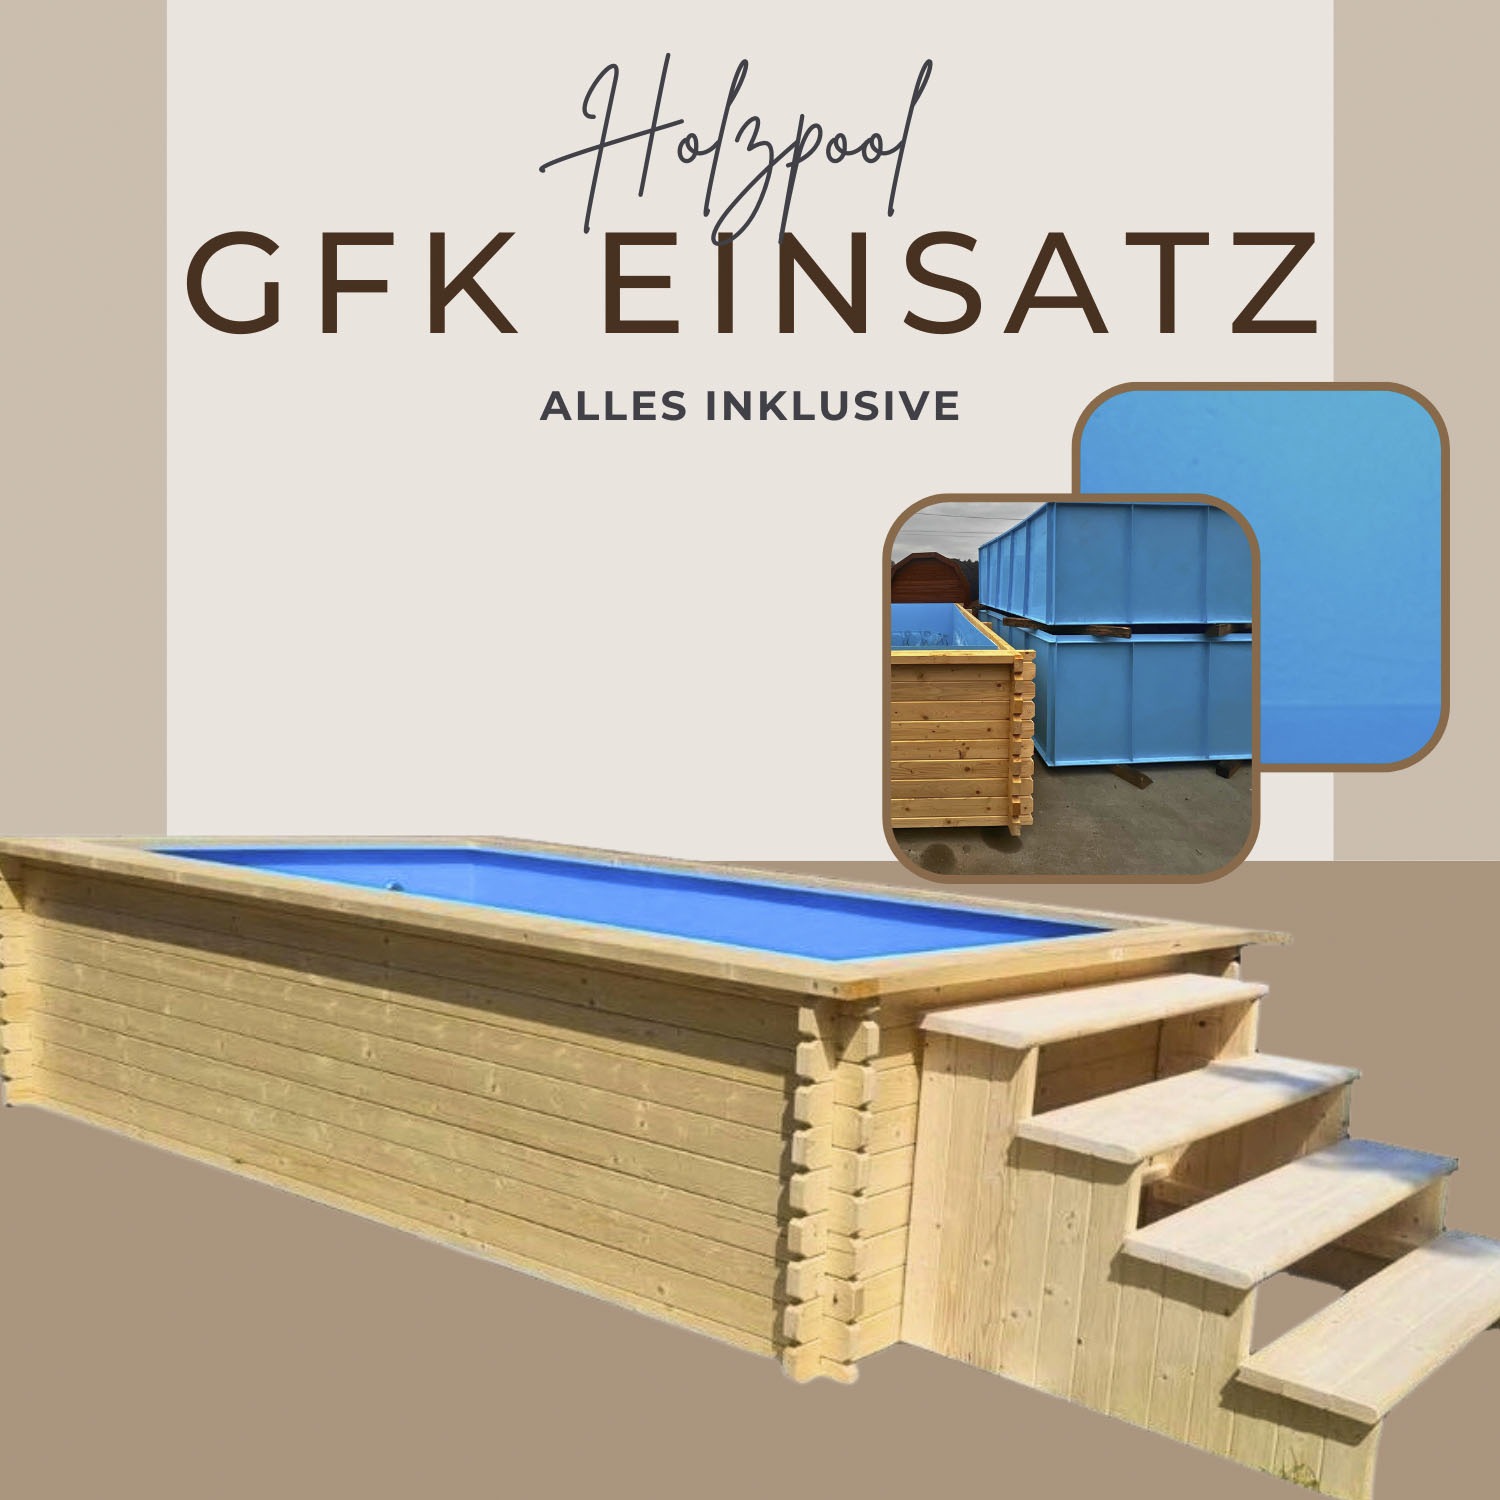 EDEN Holzmanufaktur Rechteckpool »Fix&Fertig Fichtenholz Pool«, inkl. blauem Einsatz, Dämmung, Einstiegstreppe & -Leiter, Wasserablauf